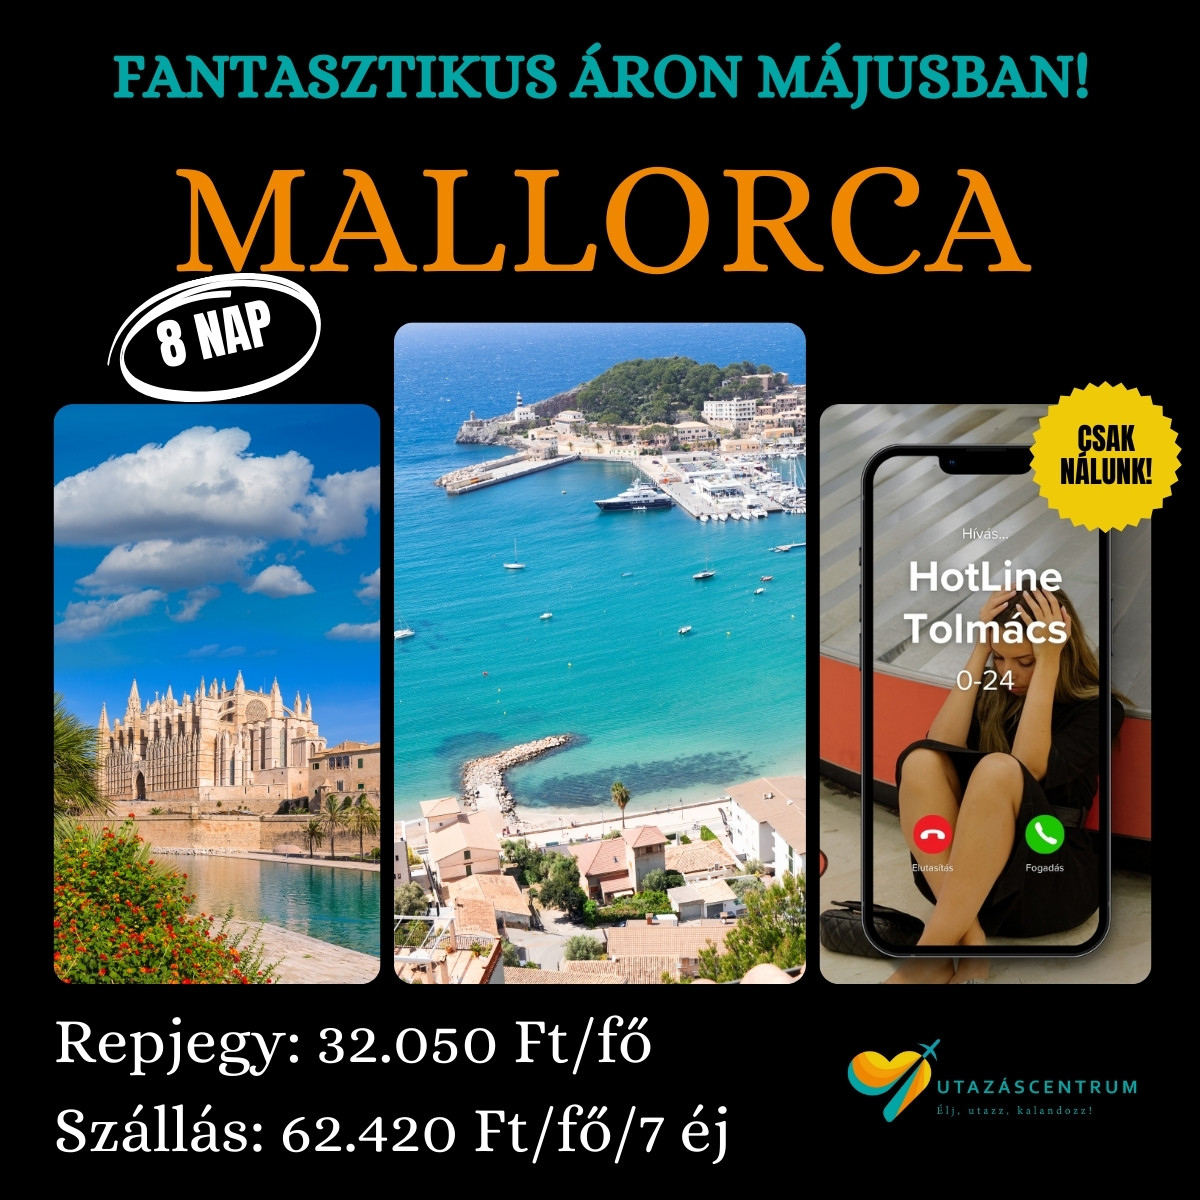 Mallorca Spanyolország utazás nyaralás üdülés előszezon városlátogatás utazáscentrum blog